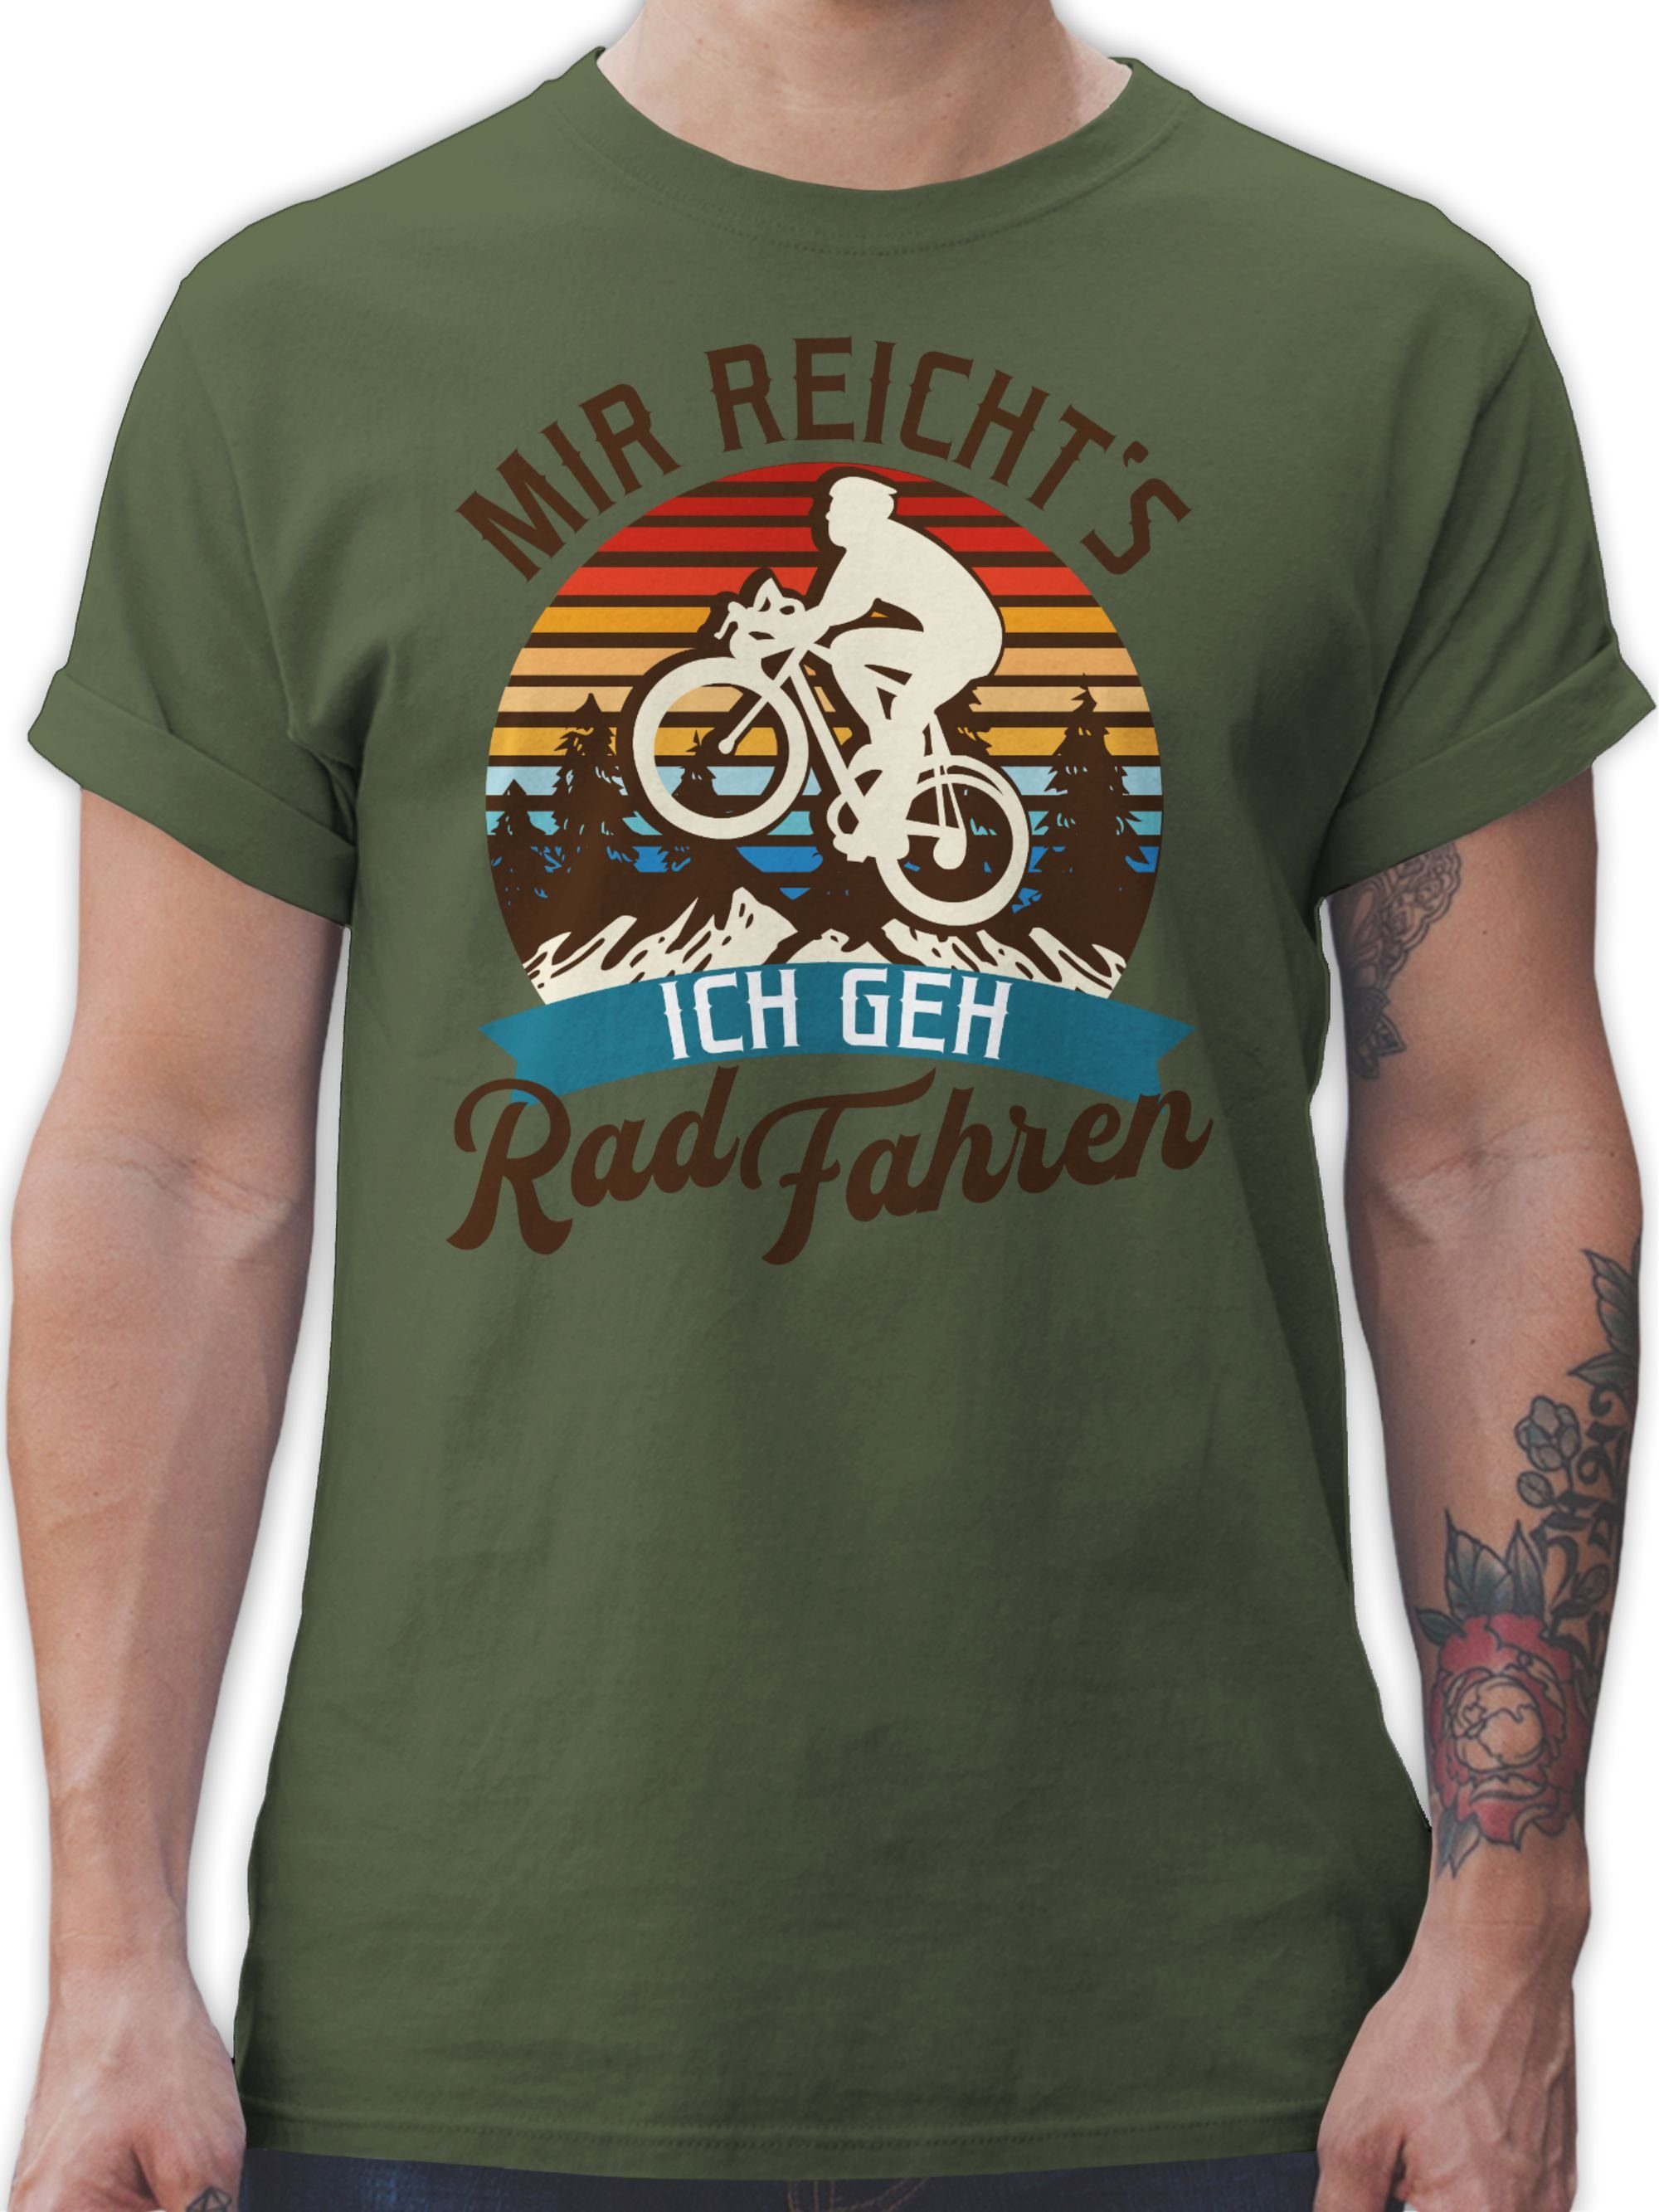 Rad Radsport Mountainbike fahren Bekleidung Grün Army 1 Mir geh Shirtracer Geschenk T-Shirt Fahrrad reicht's Fahrrad ich -